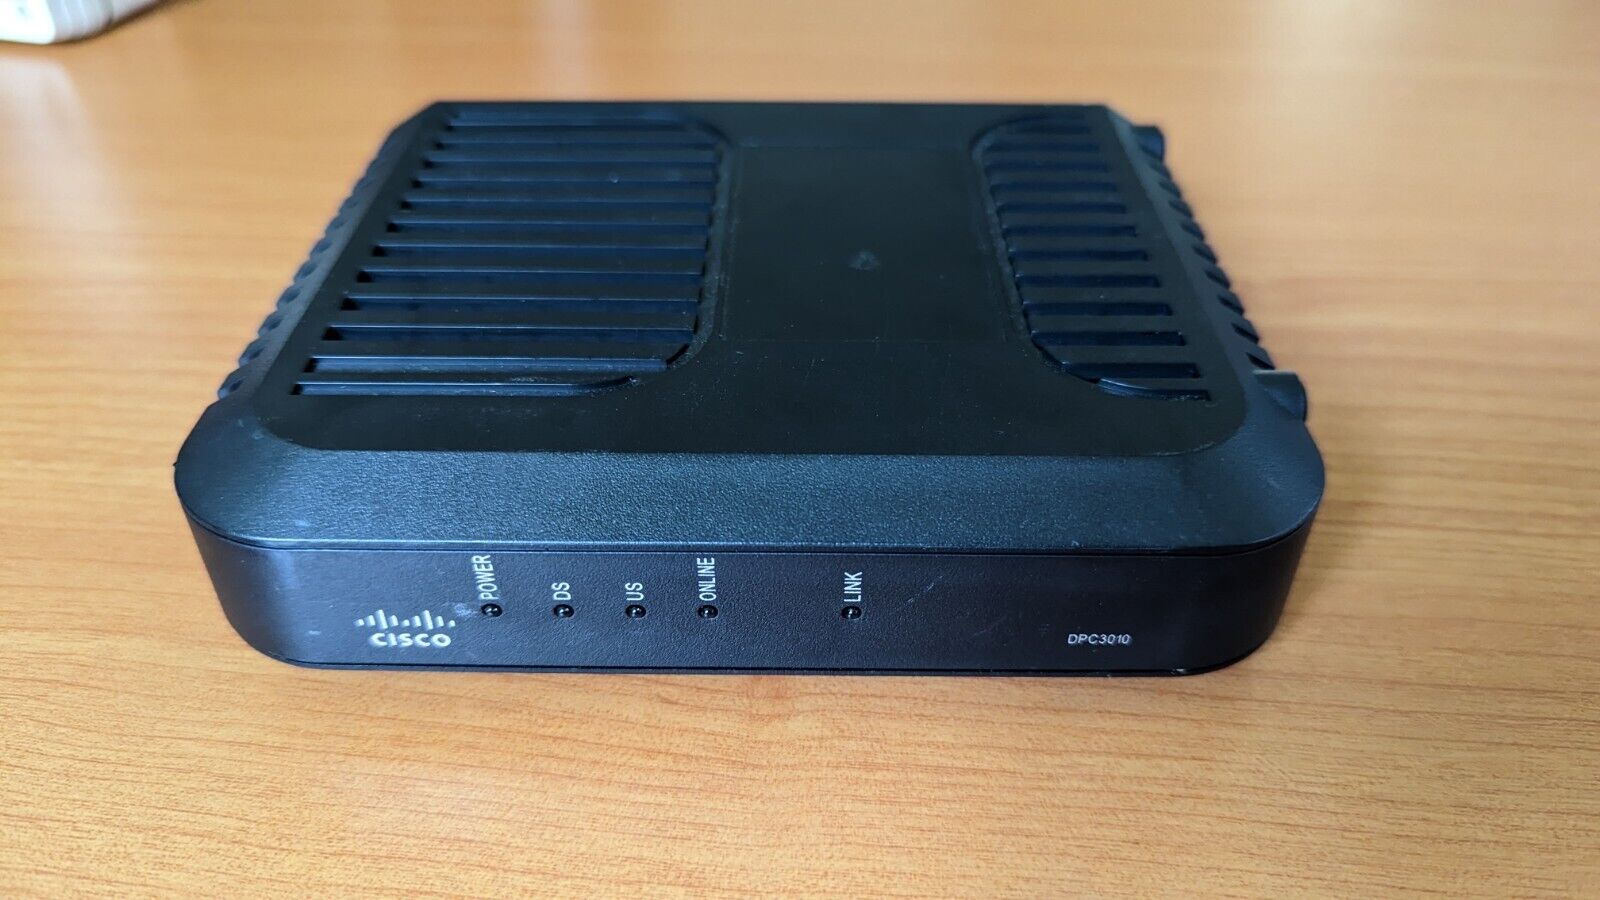 Cisco Dpc3010 Docsis 3.0 Cable Modem - Usb 2.0 / Gigabit Ethernet Good Condition